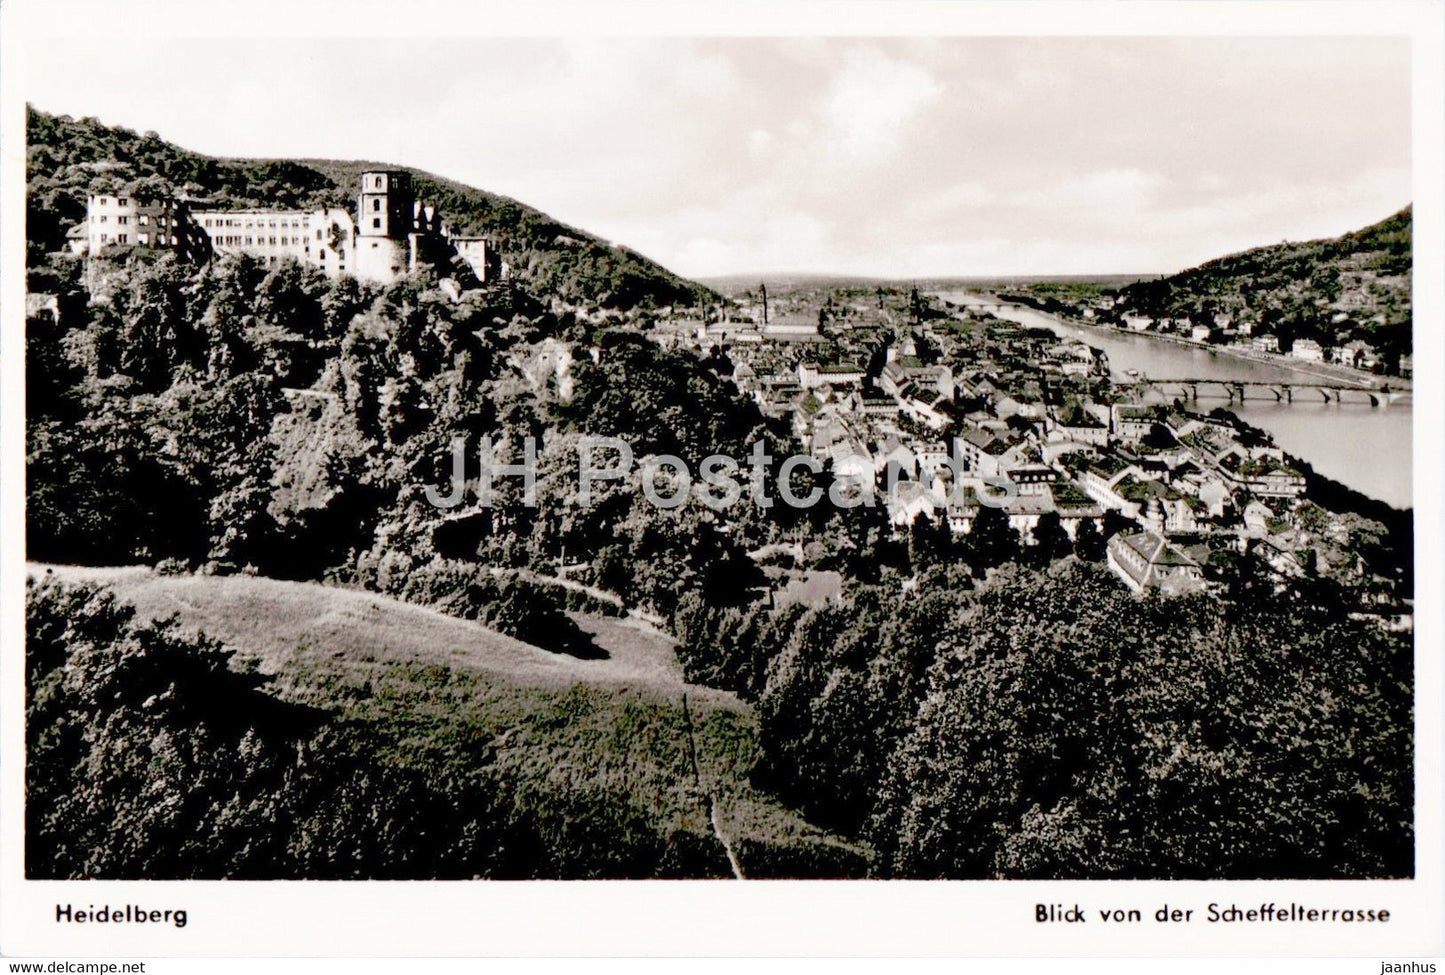 Heidelberg - Blick von der Scheffelterrasse - old postcard - Germany - unused - JH Postcards